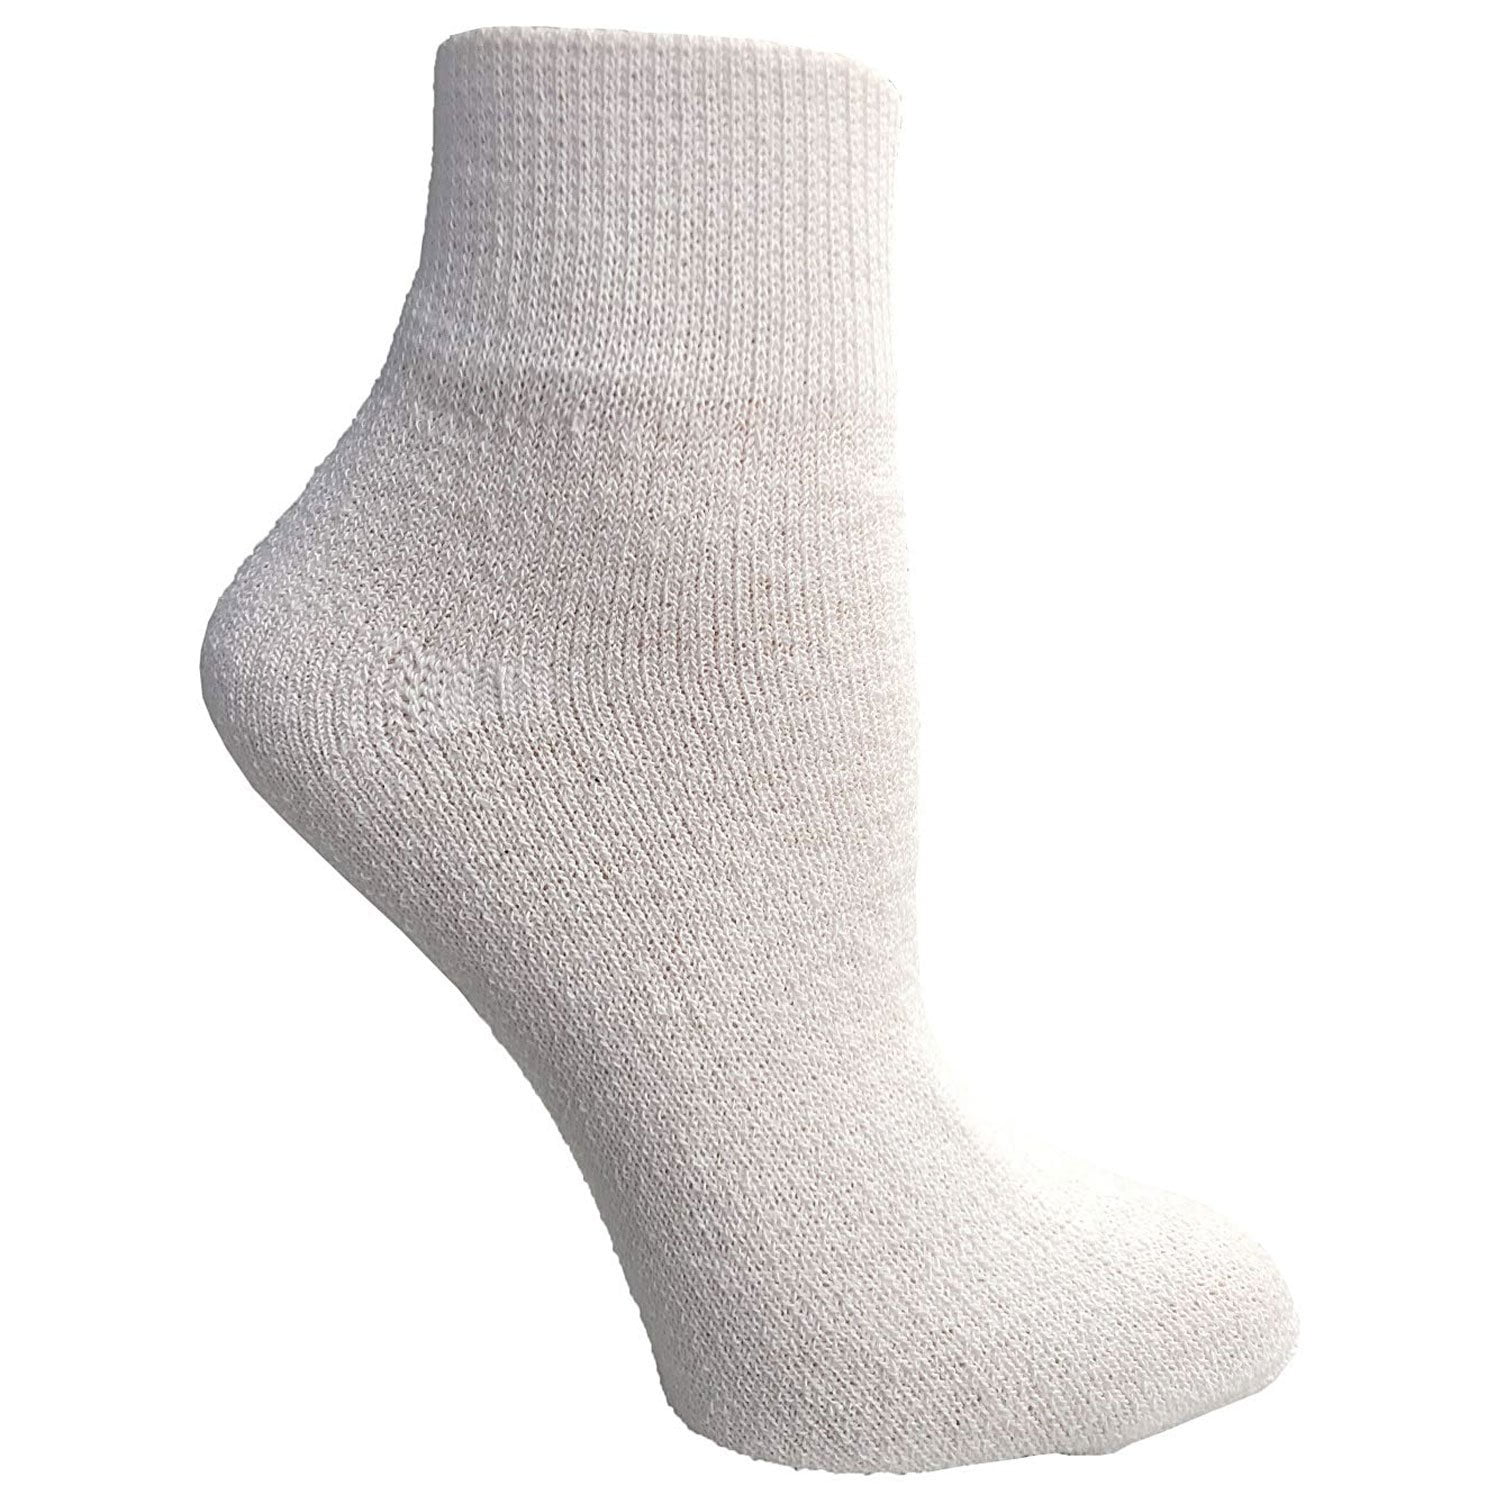 socks for type 1 diabetes 2